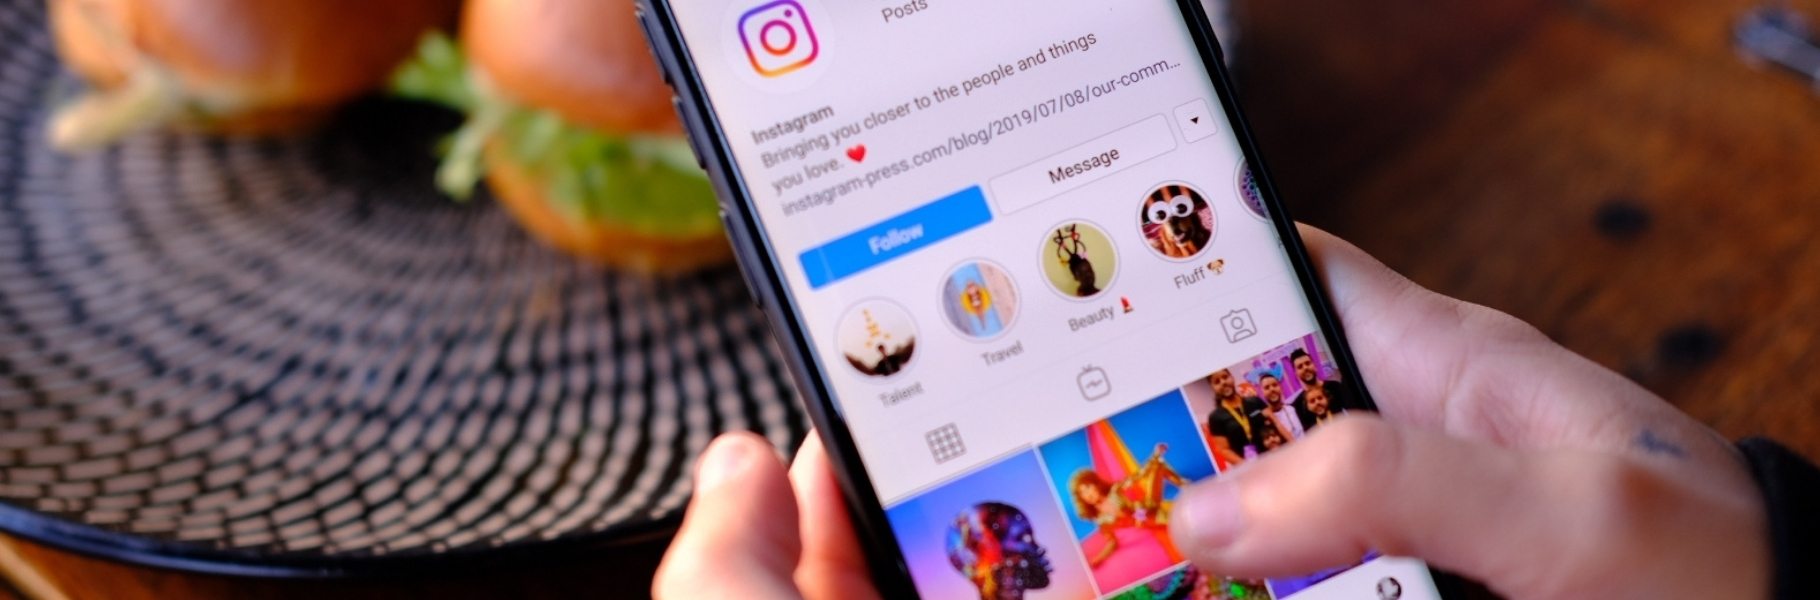 ????¿Cómo poner varias fotos en una historia de Instagram? | Curso | Crehana